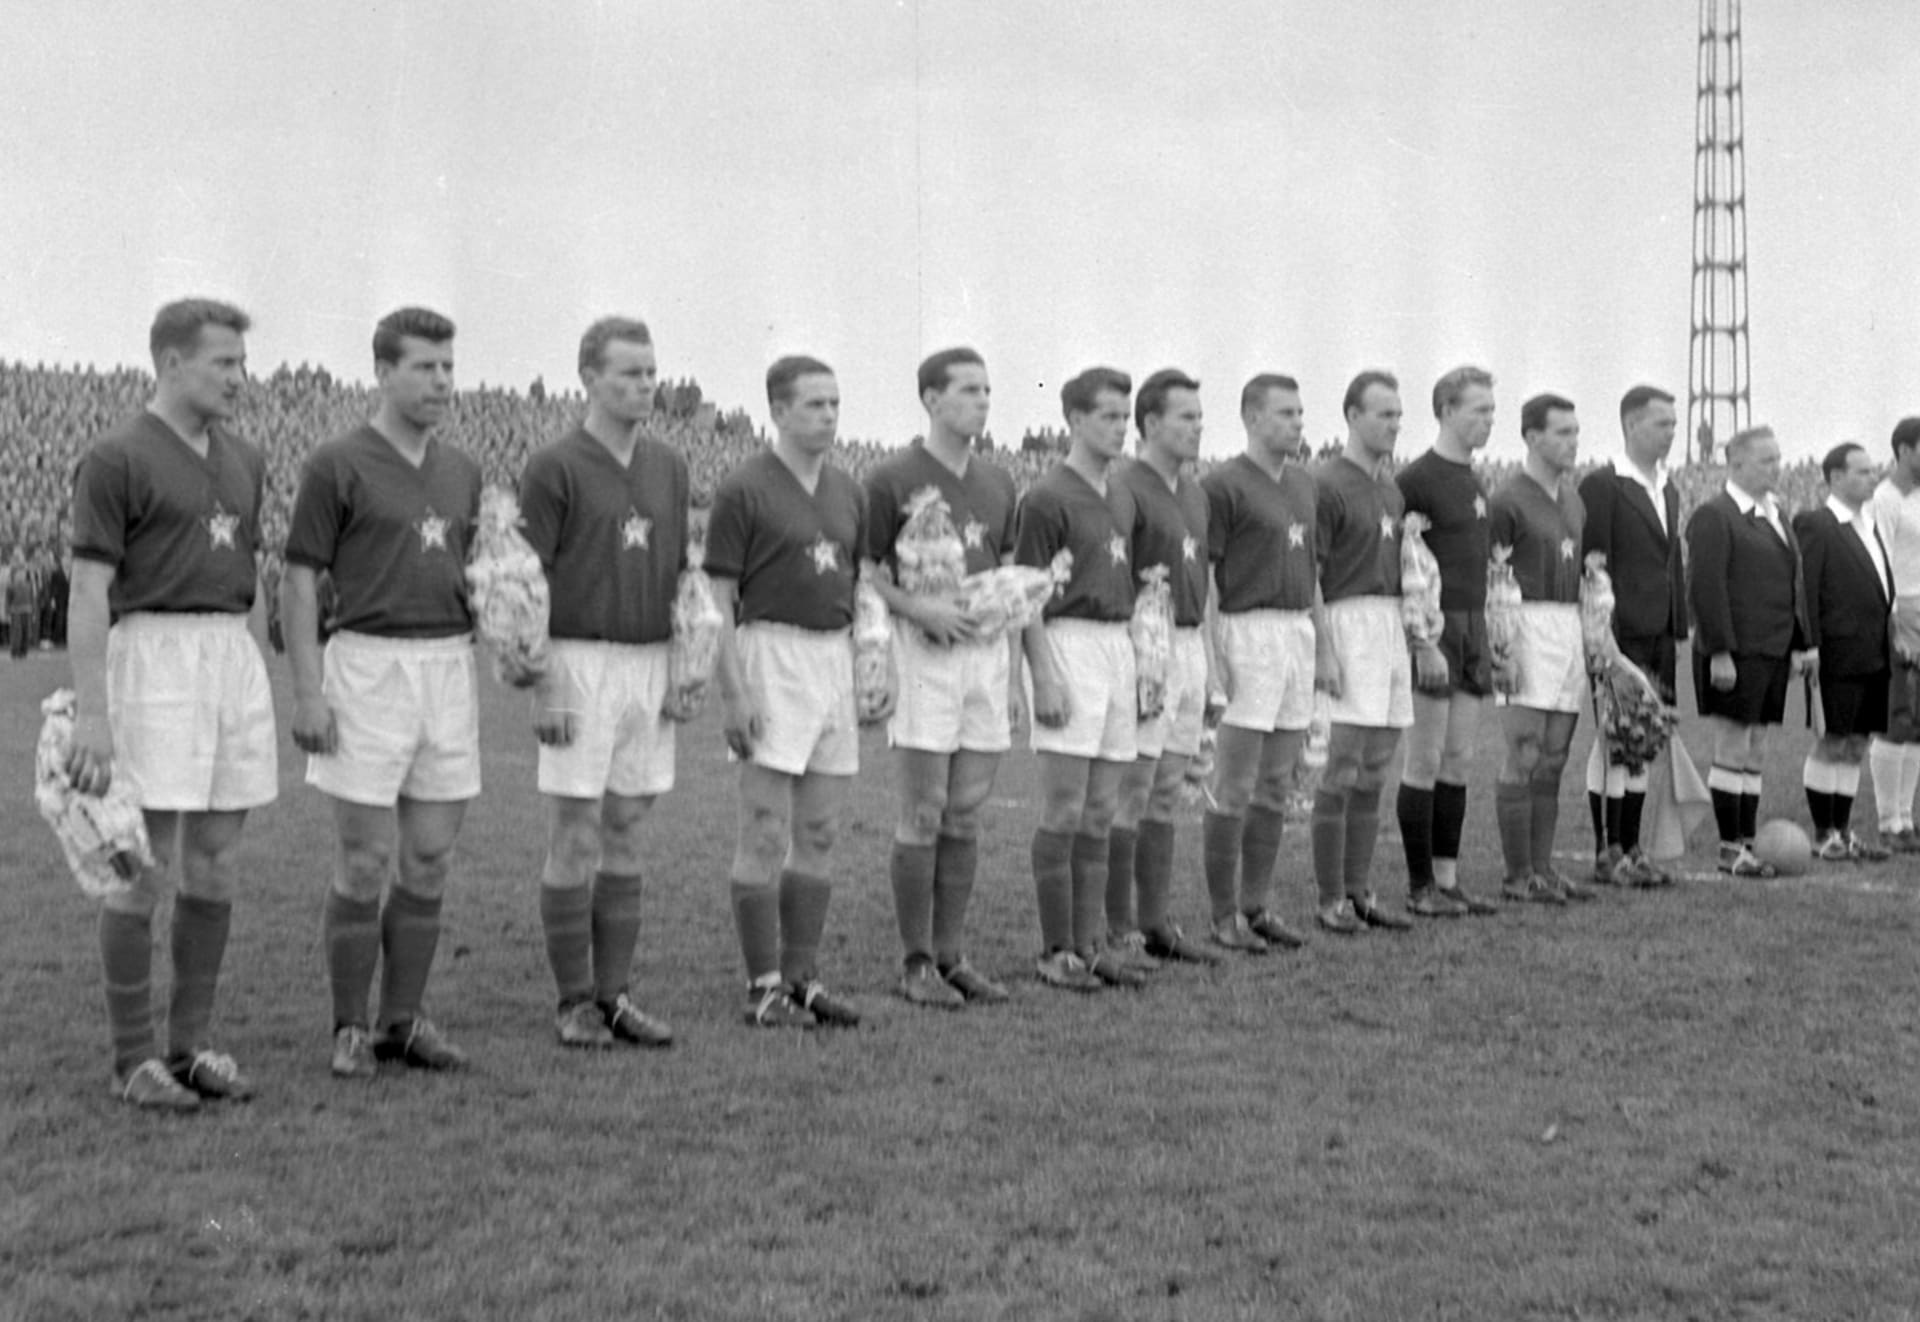 Českoslovenští fotbalisté v roce 1956 před zápasem proti Brazílii.